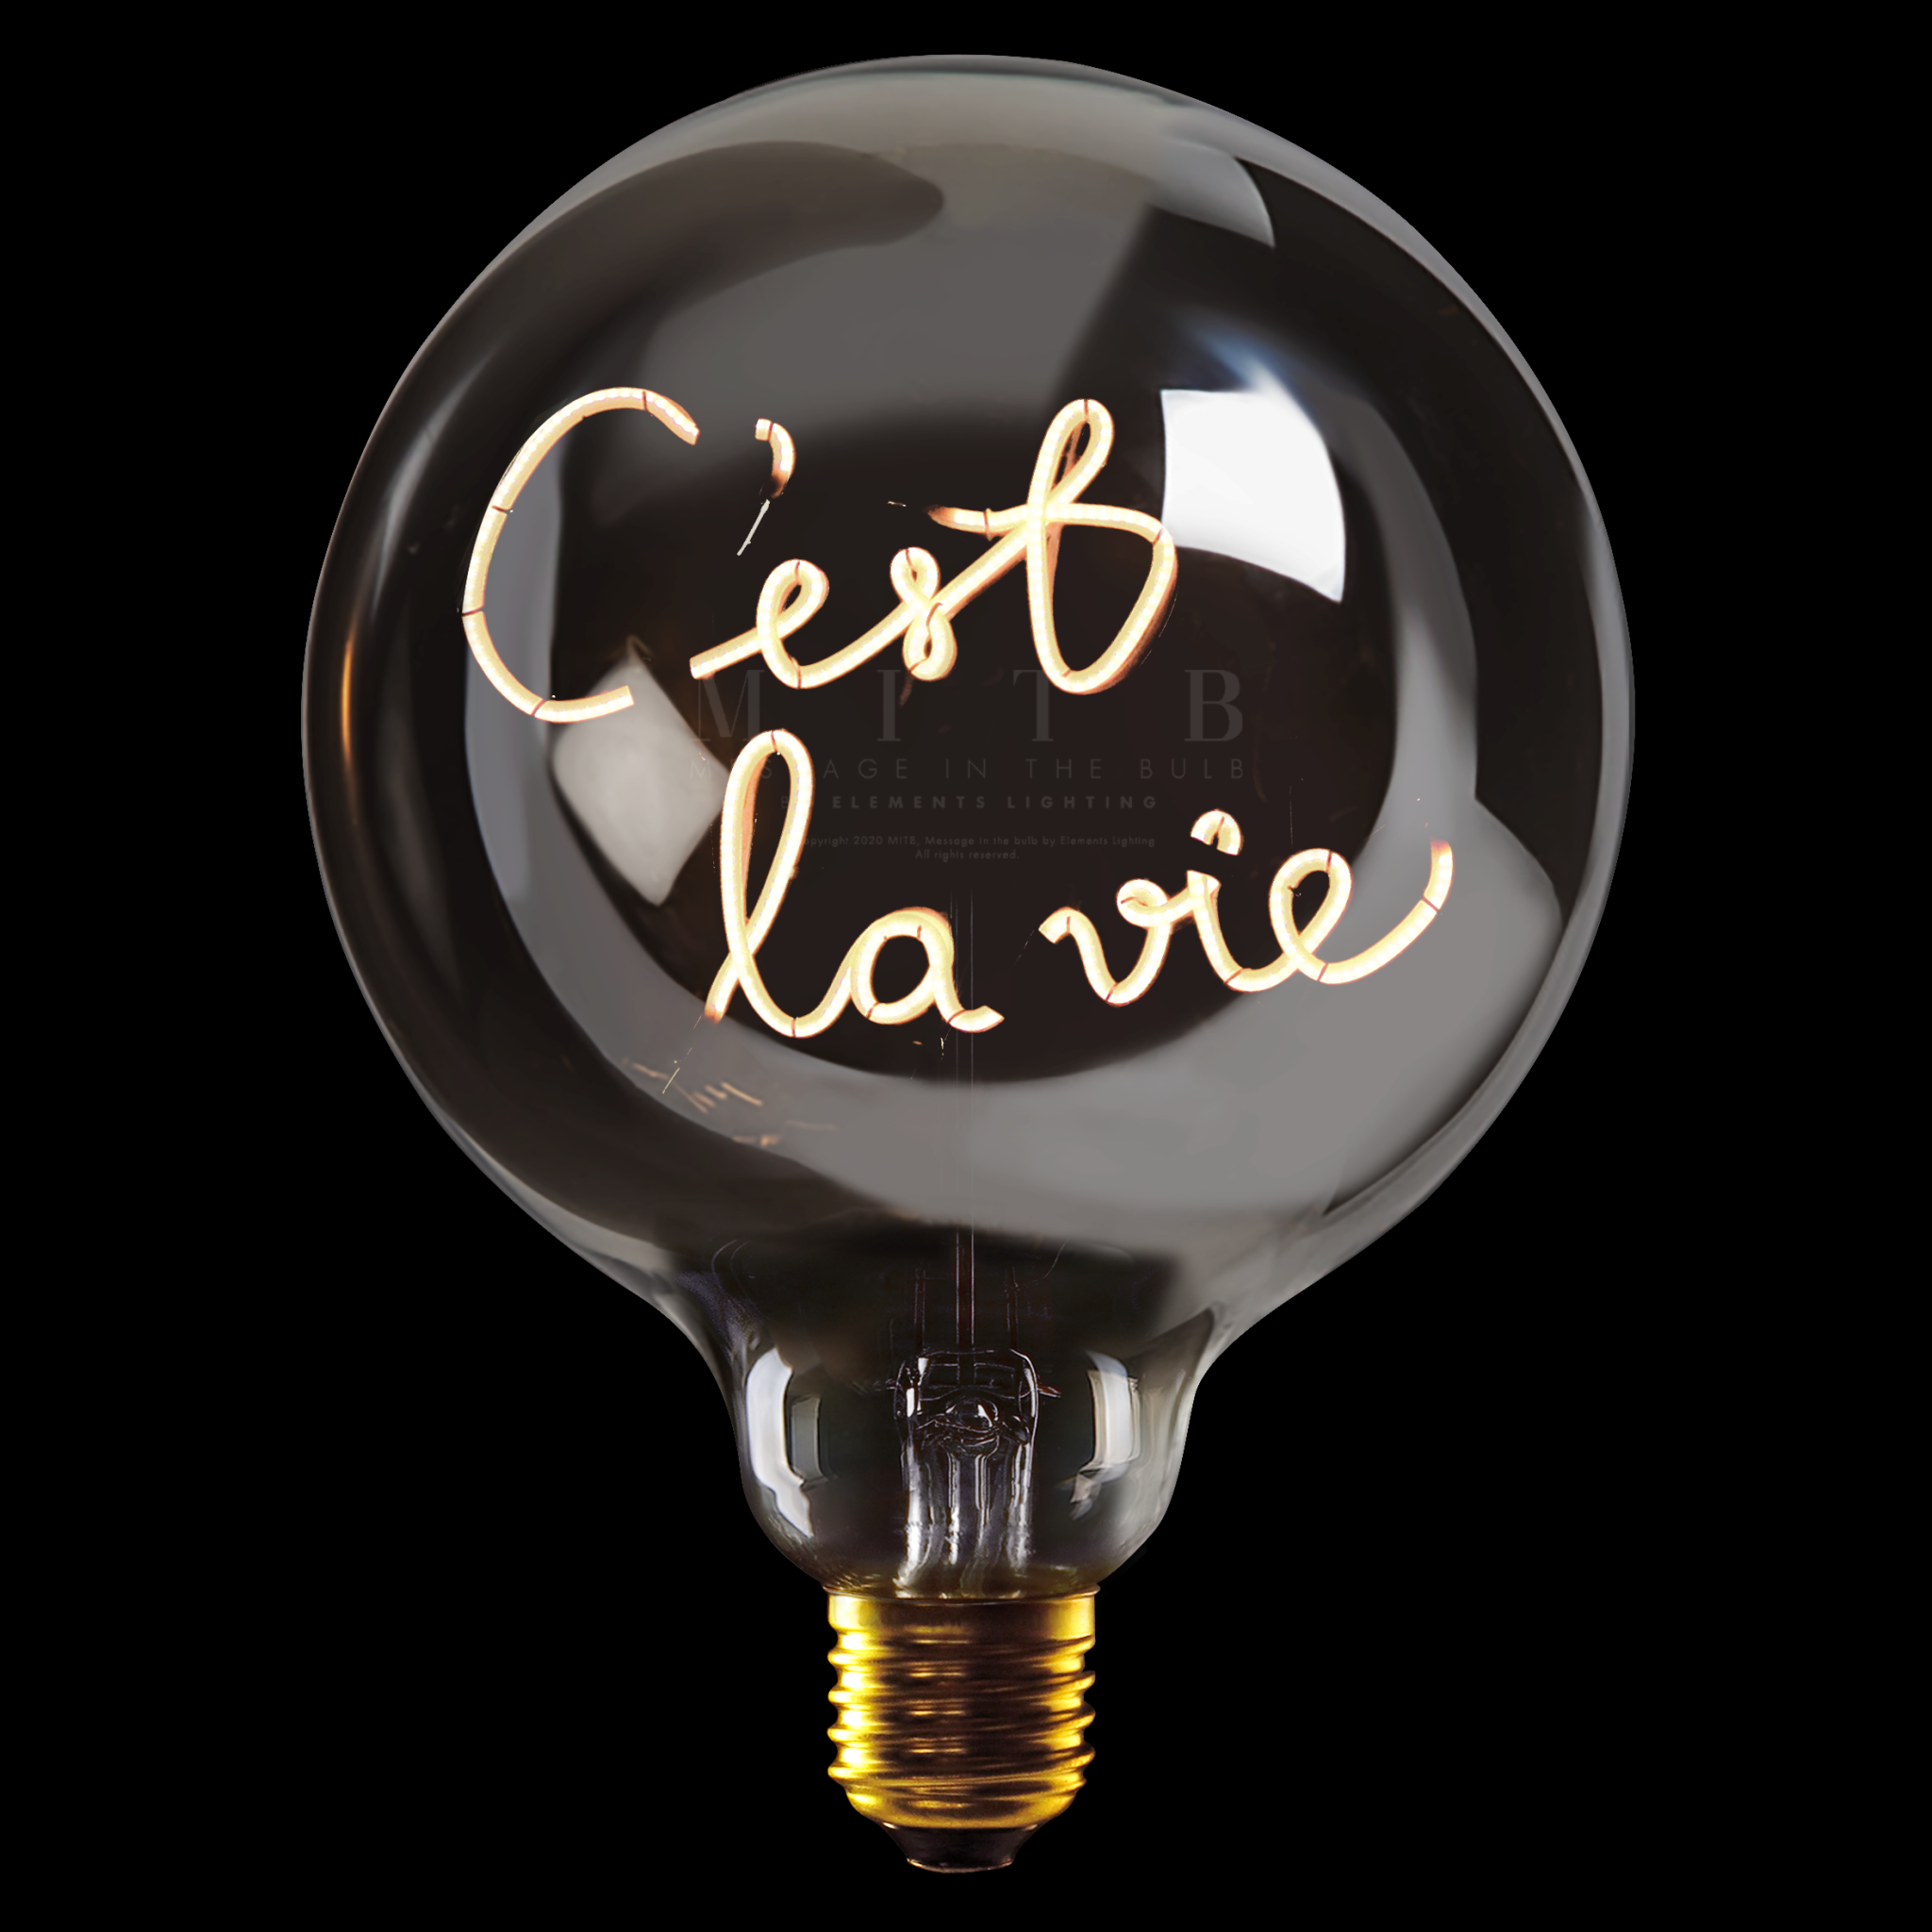 Luminous Bulb "C'est La Vie" Lamp Base Wireless-1